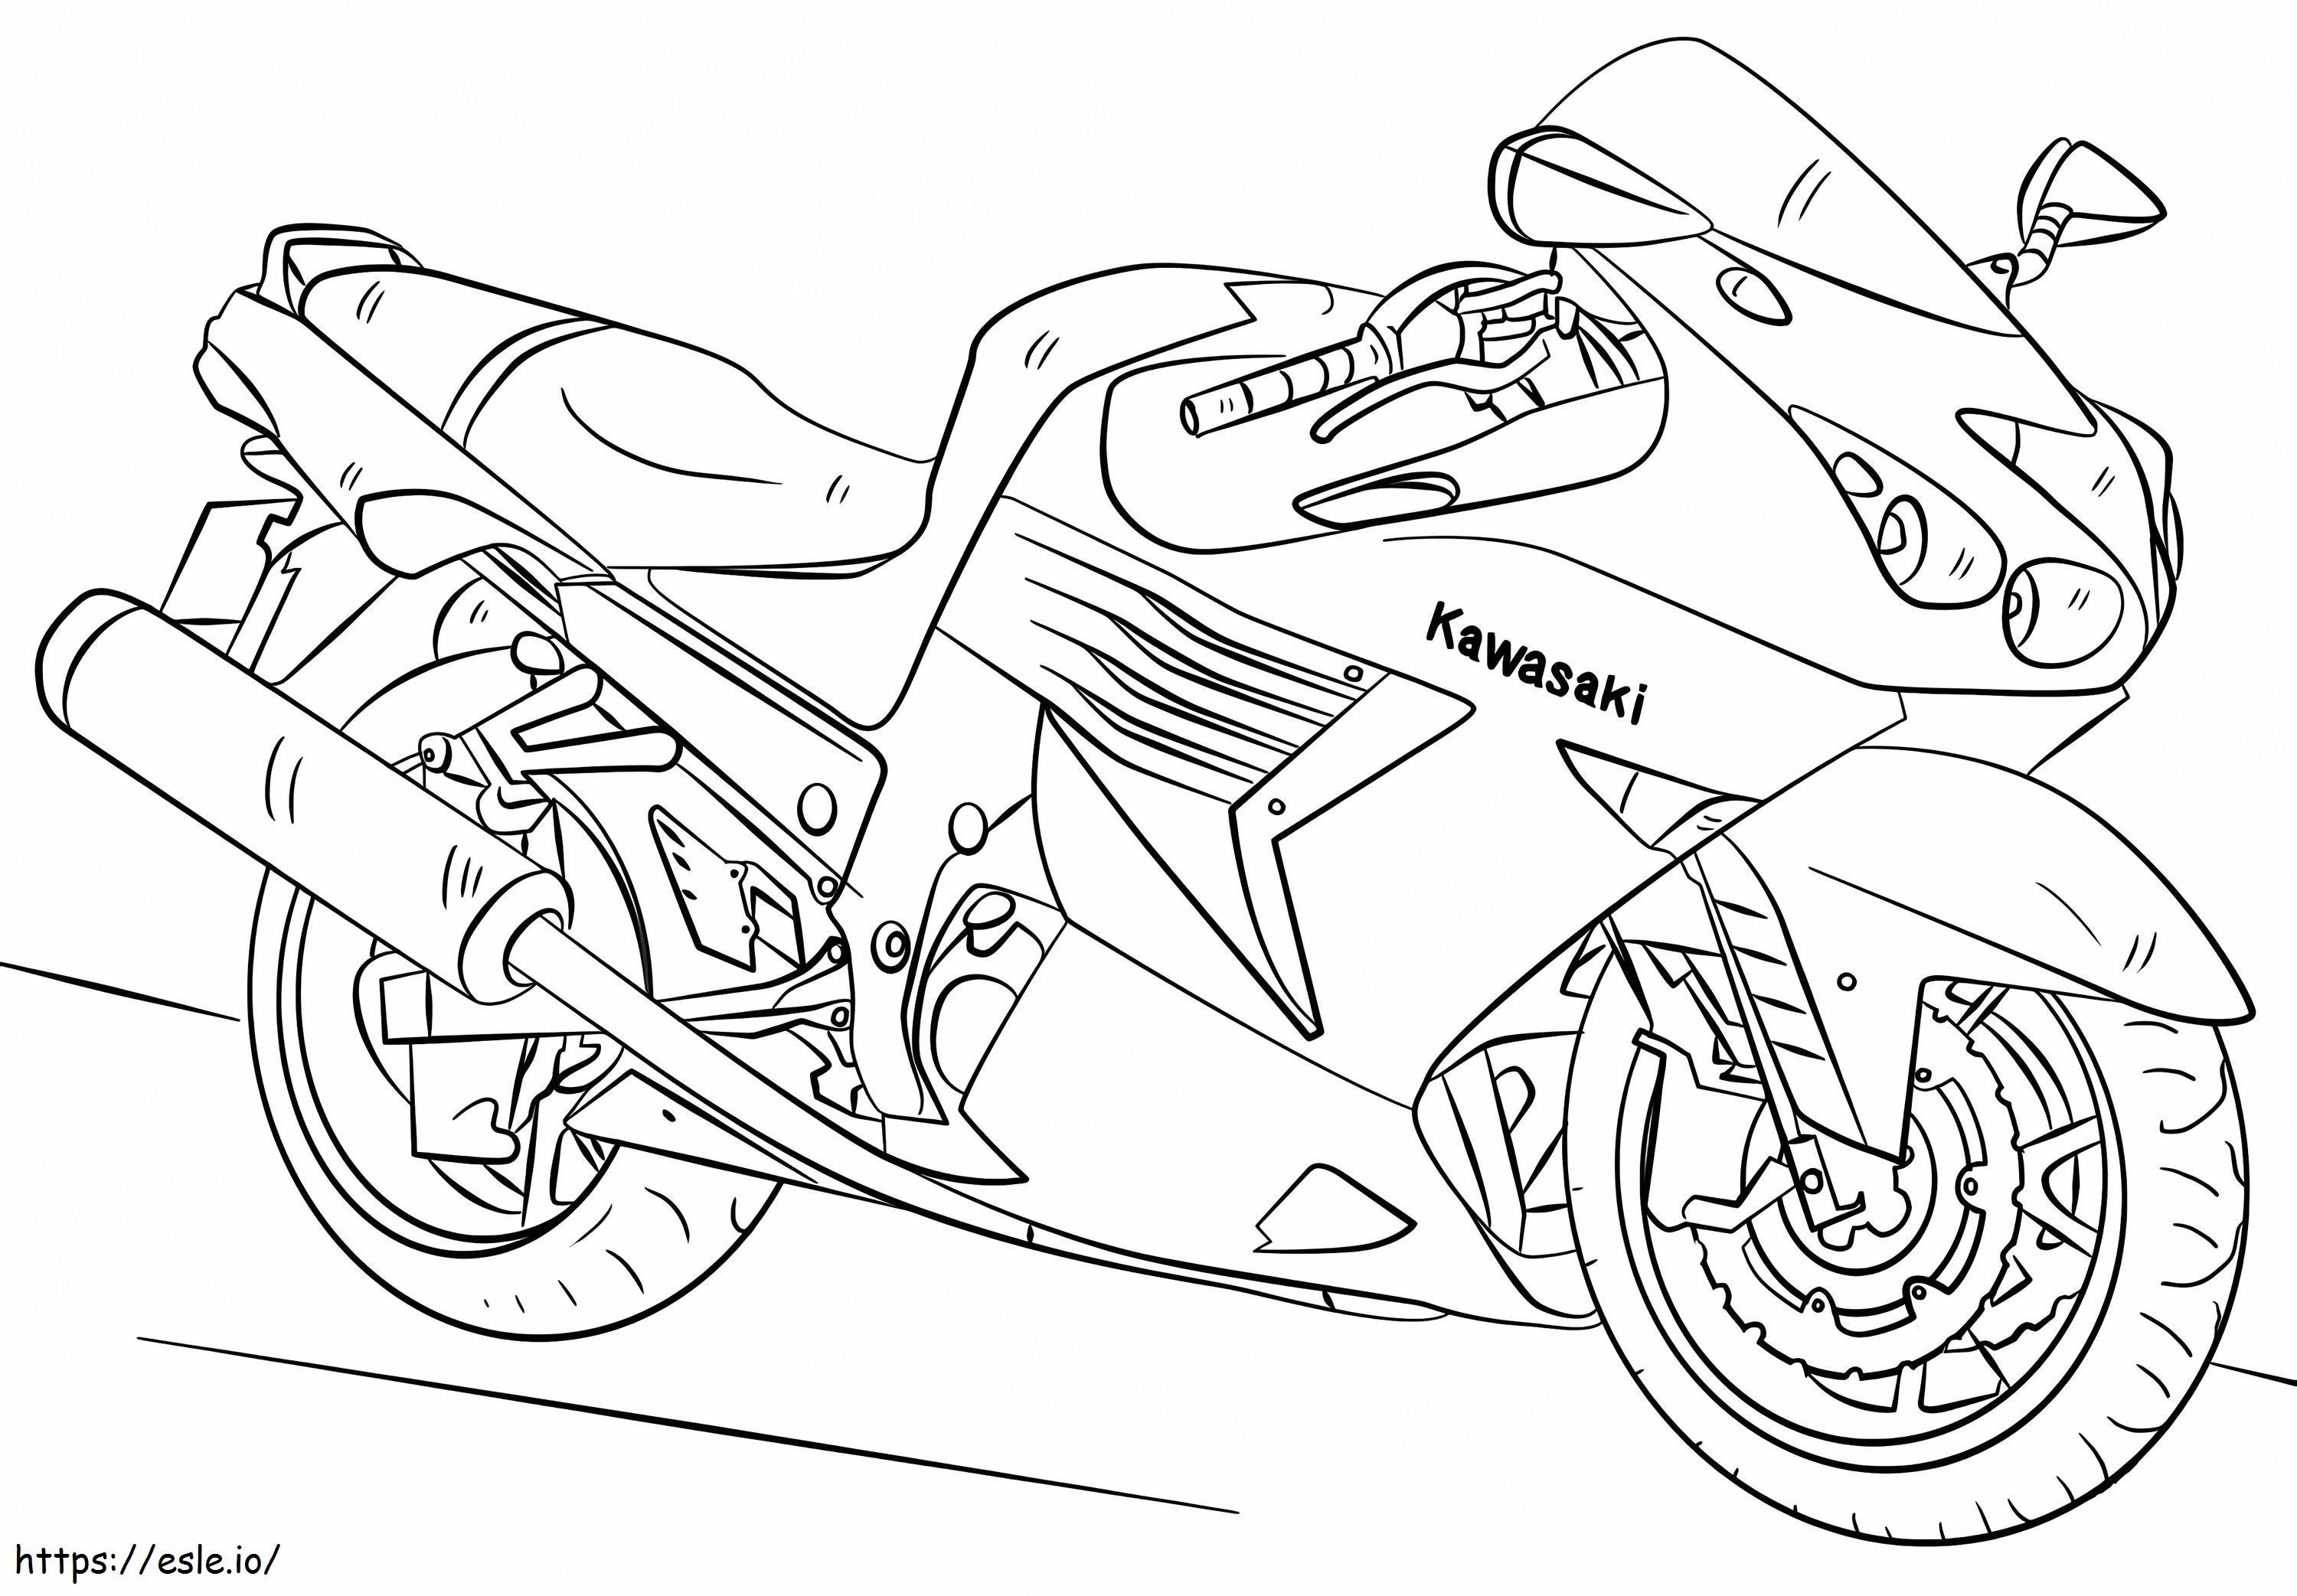 Kawasaki Motosiklet boyama